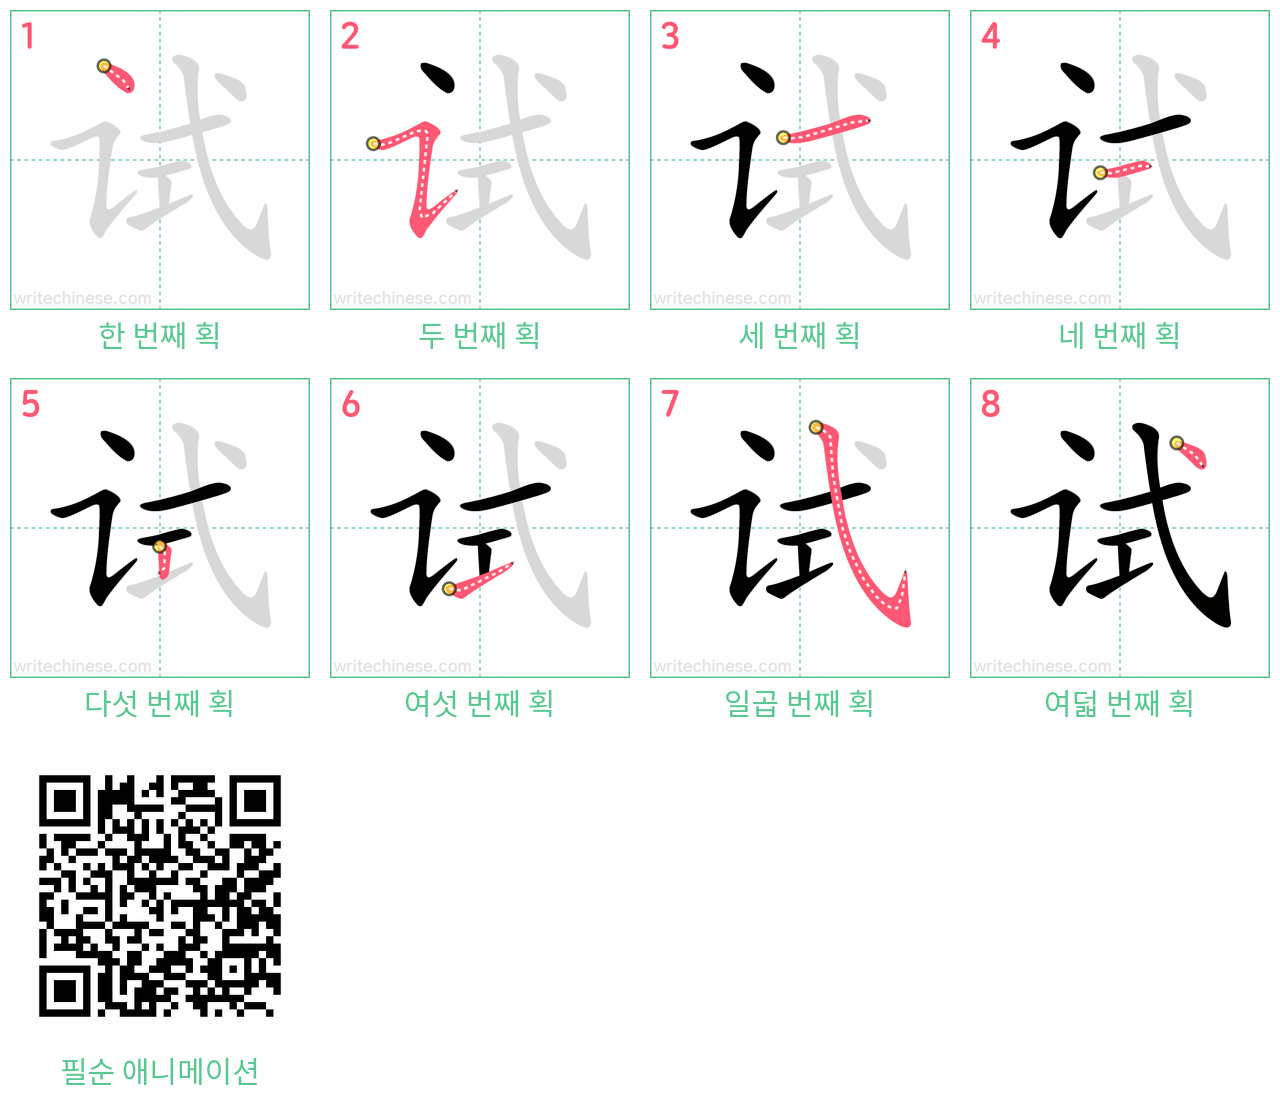 试 step-by-step stroke order diagrams